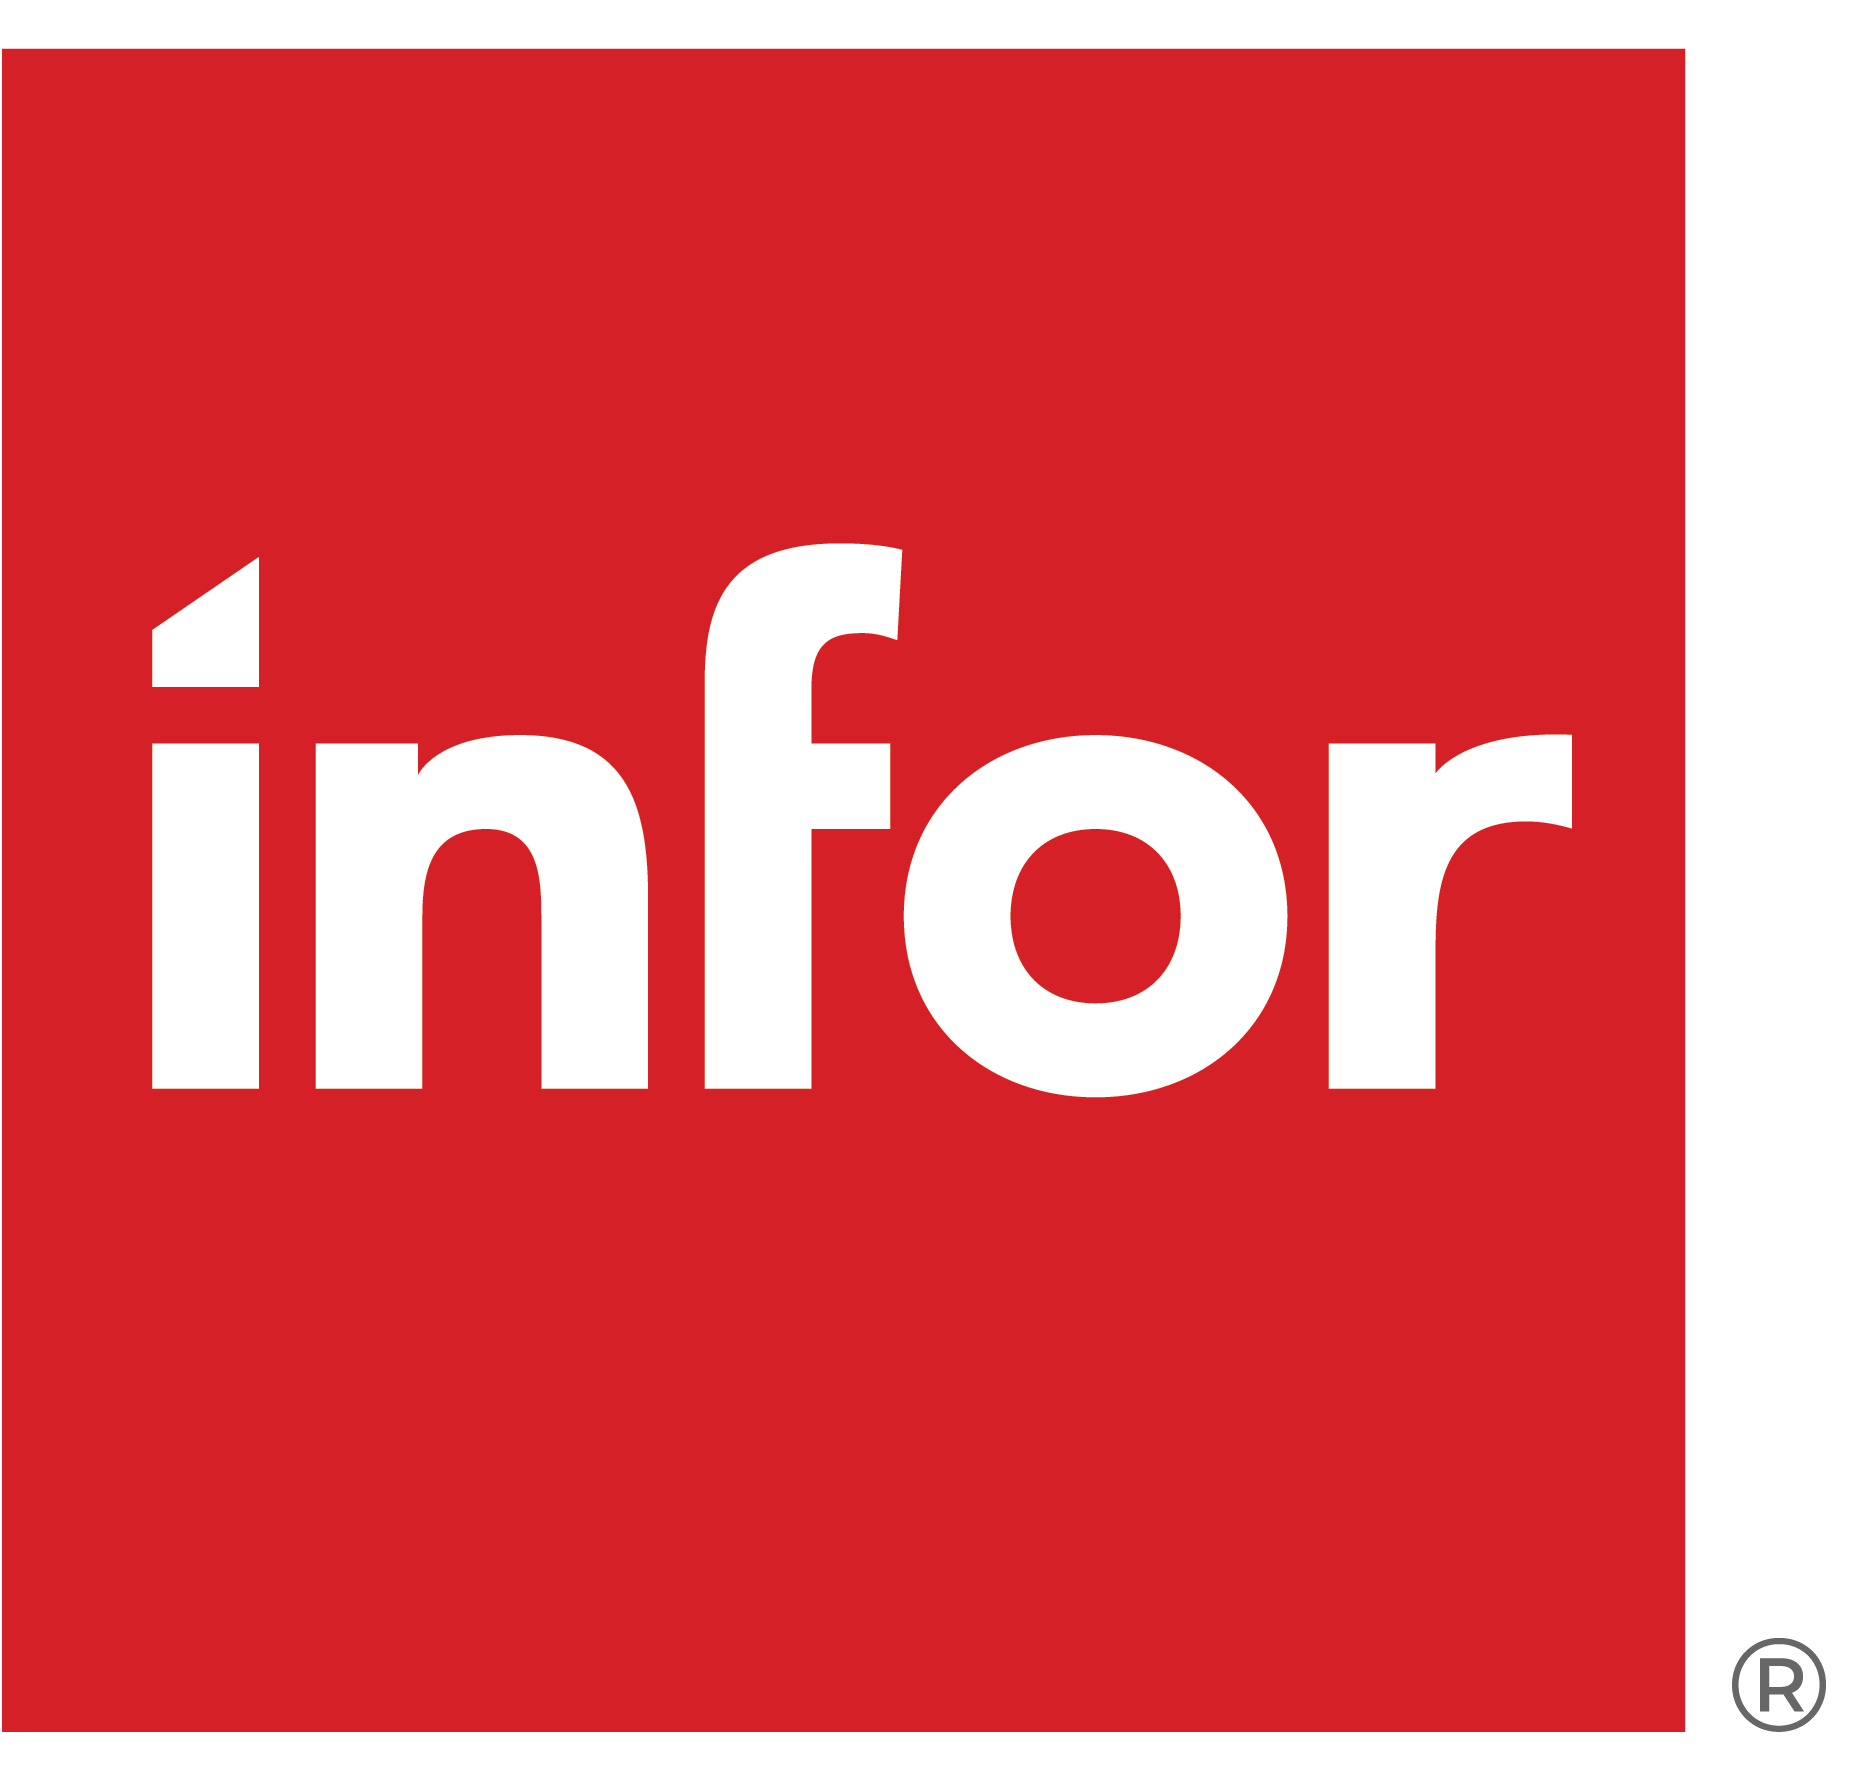 Infor Logo